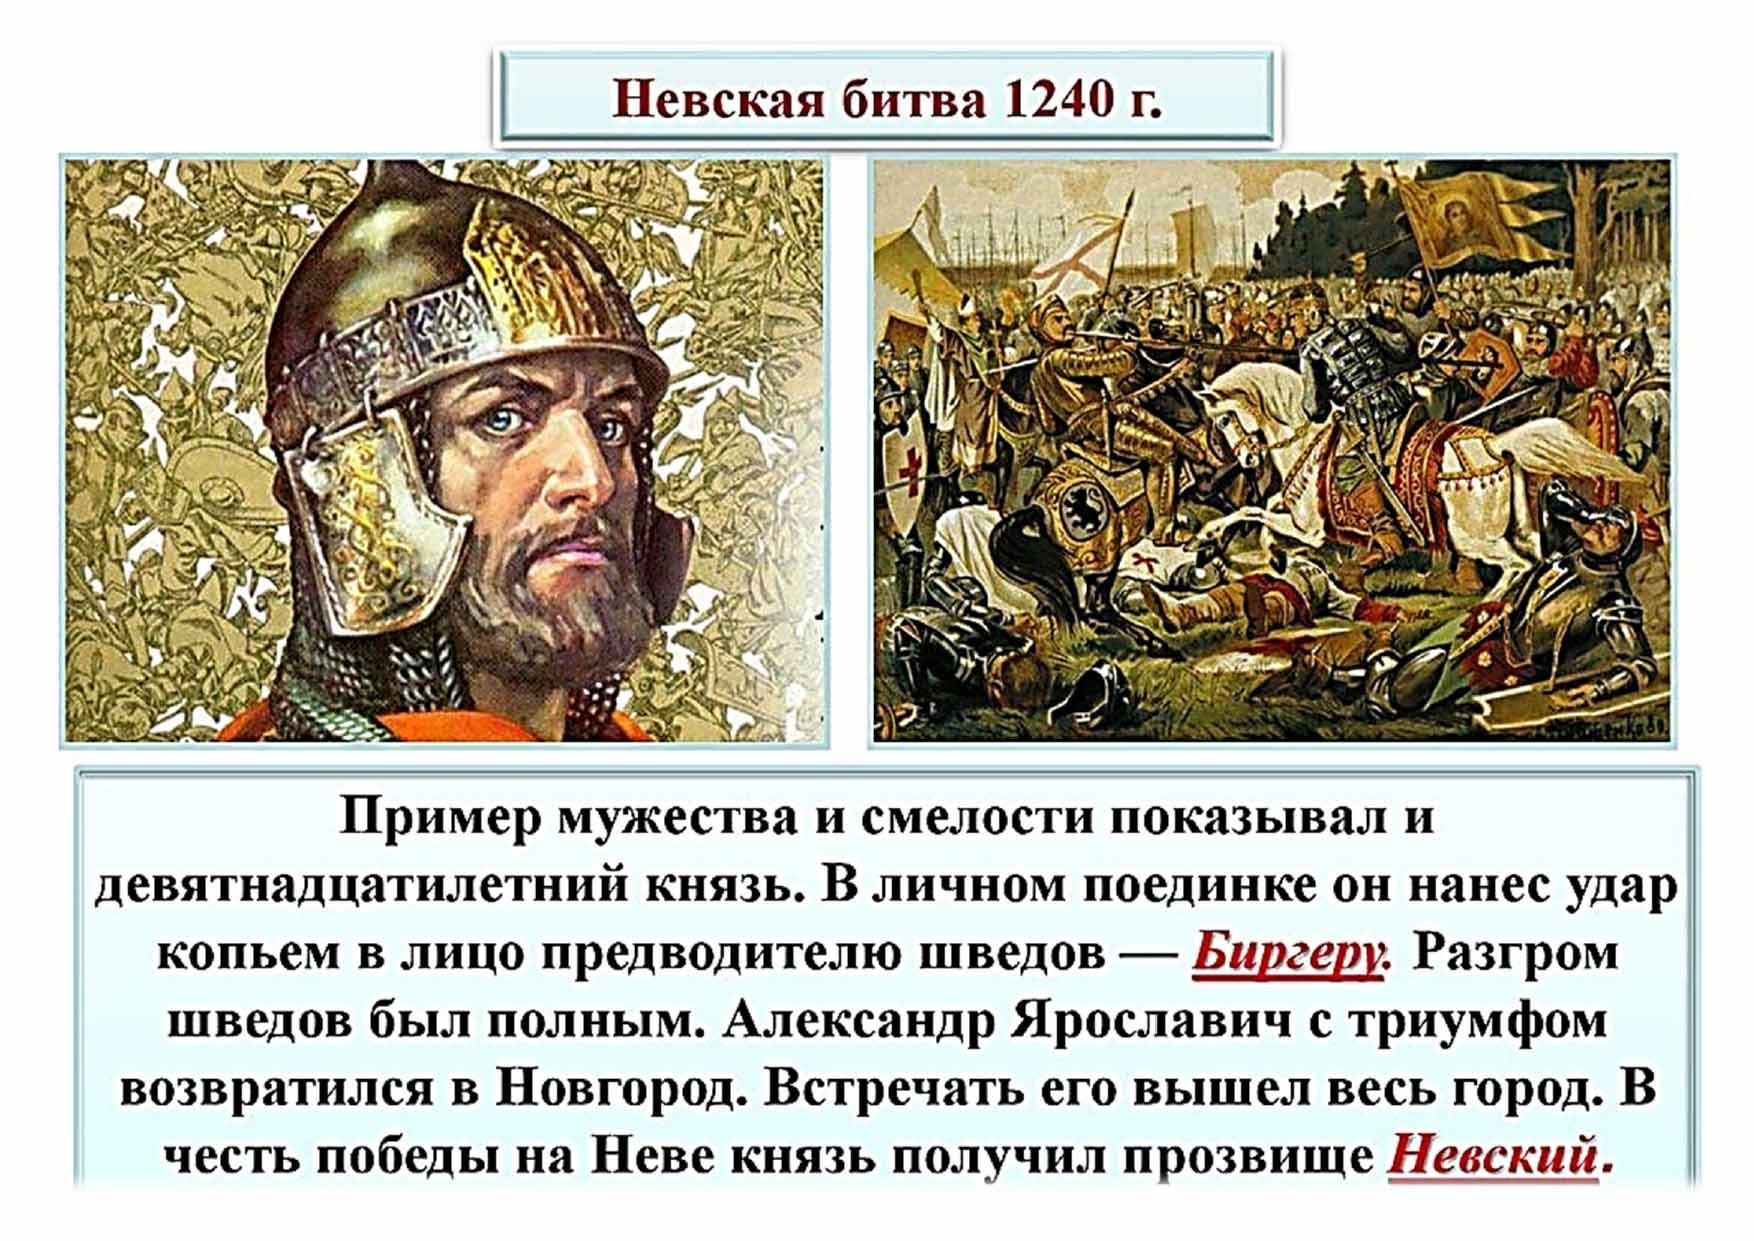 Сообщение о невской битве. 15 Июля 1240 Невская битва.